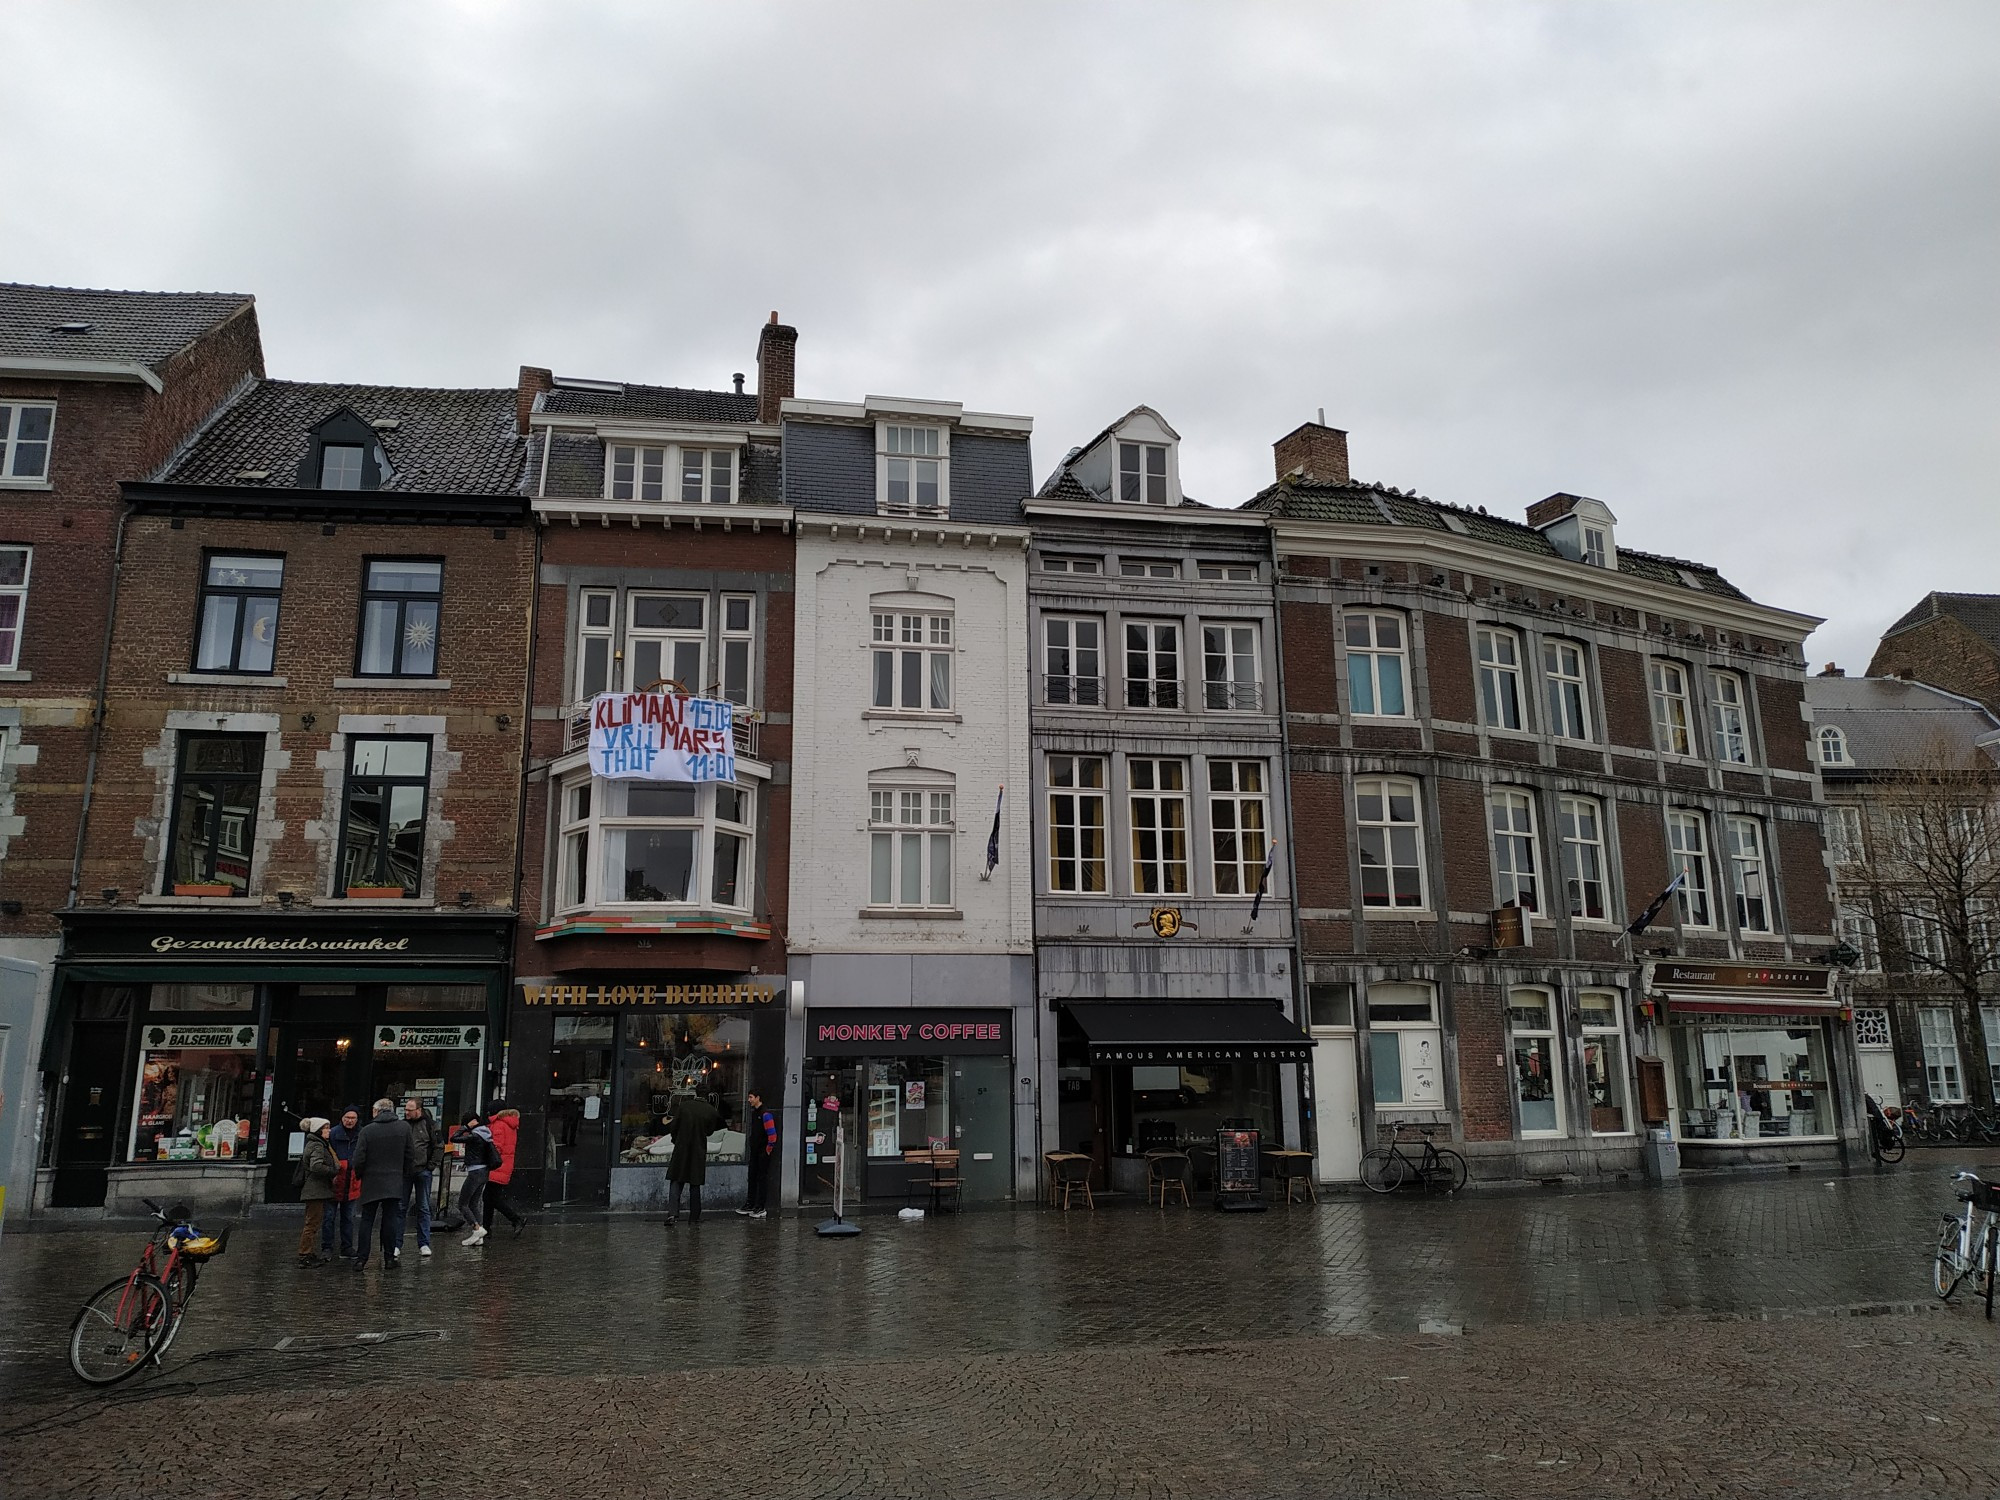 Maastricht, Netherlands